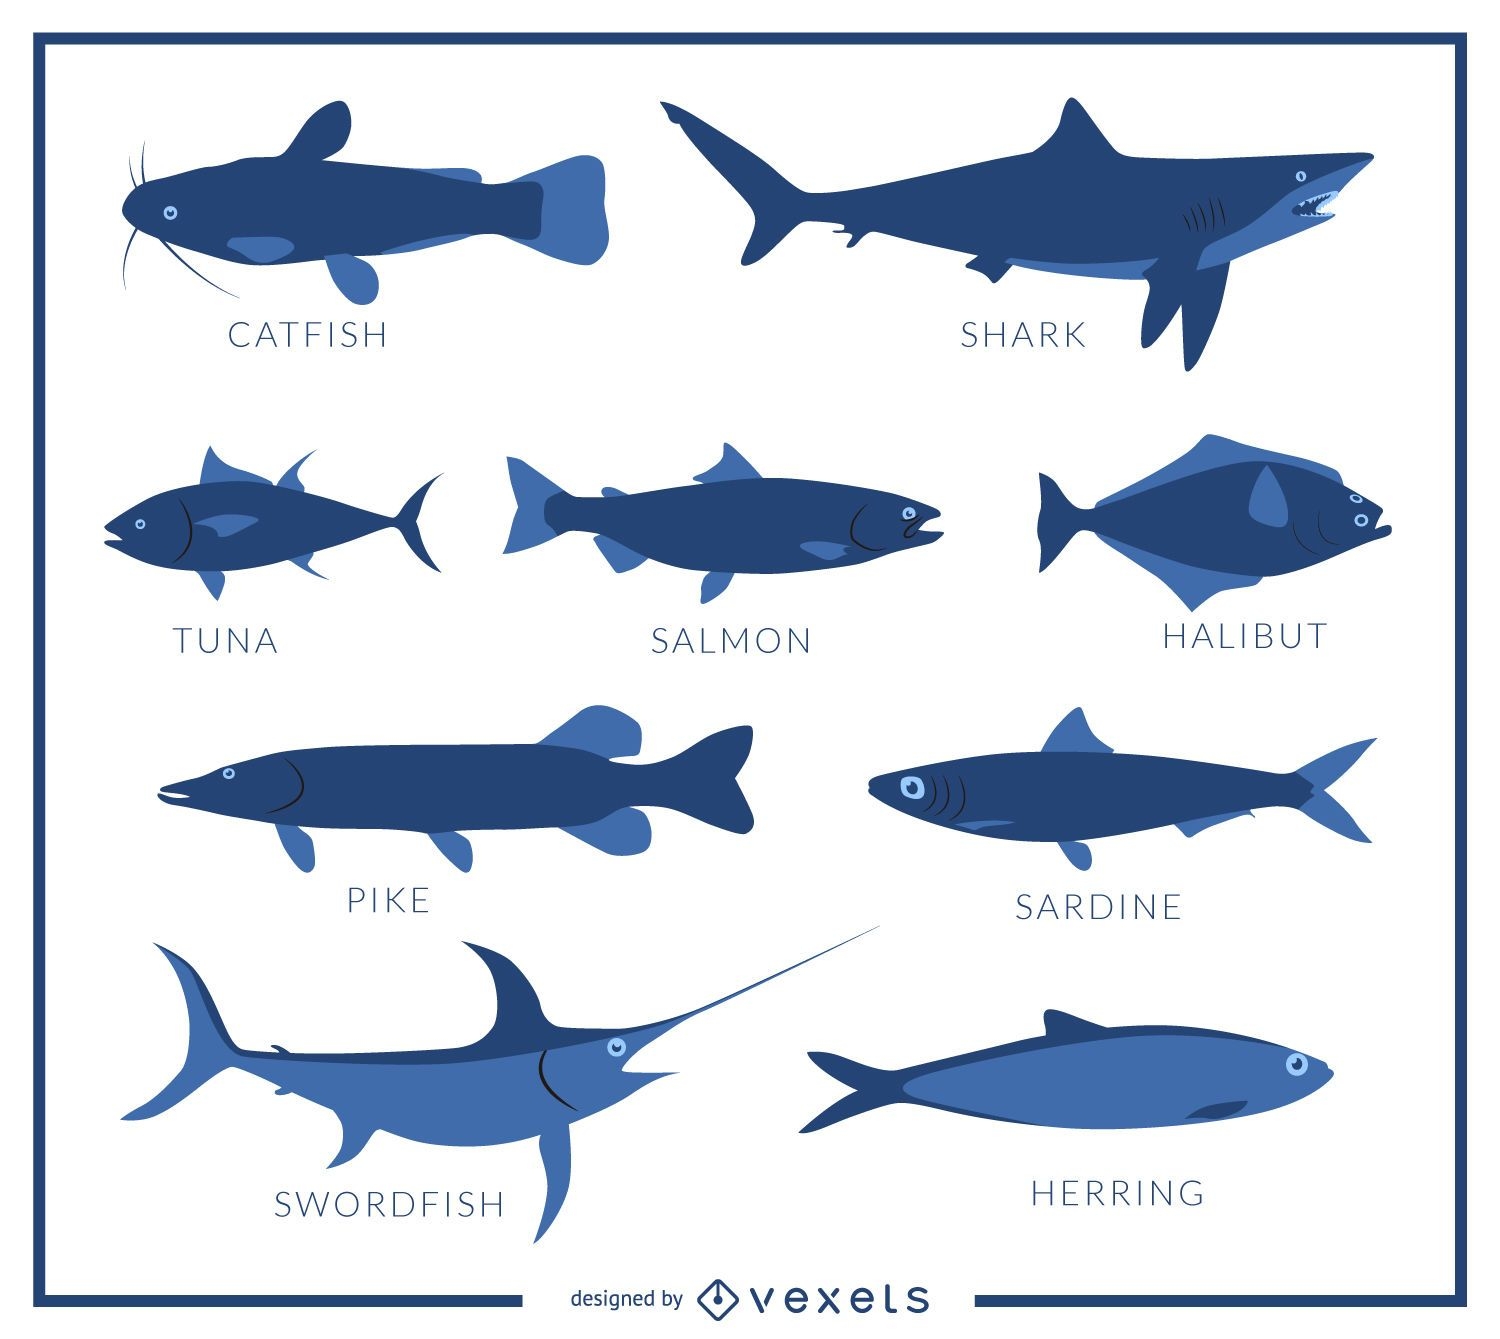 Fish species poster